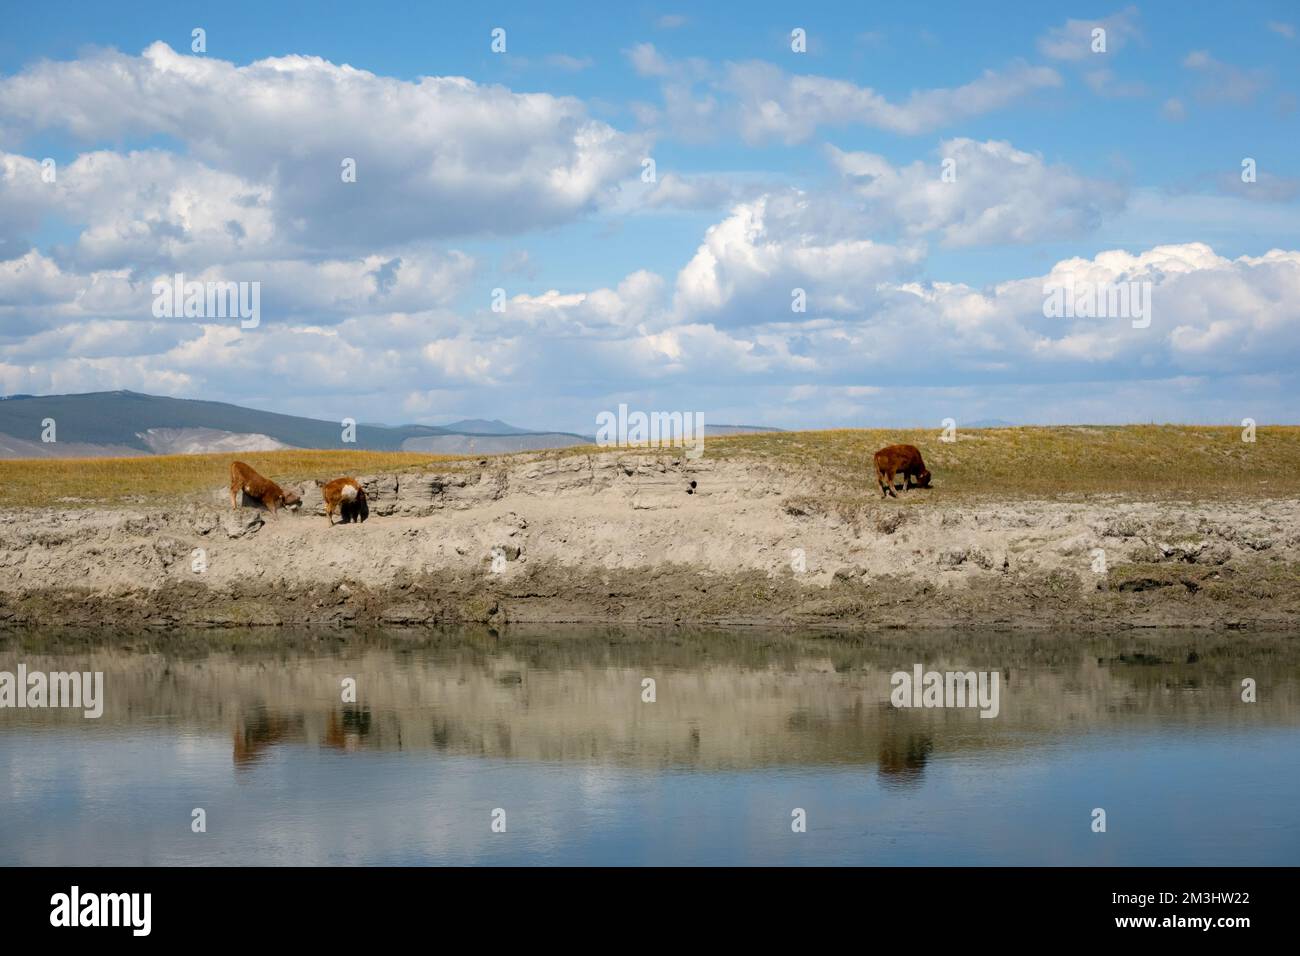 Vacca bambino su una riva del fiume mangiare erba con montagne sullo sfondo in una giornata di sole. Giovane toro grassing in mongolia deserto. Foto Stock